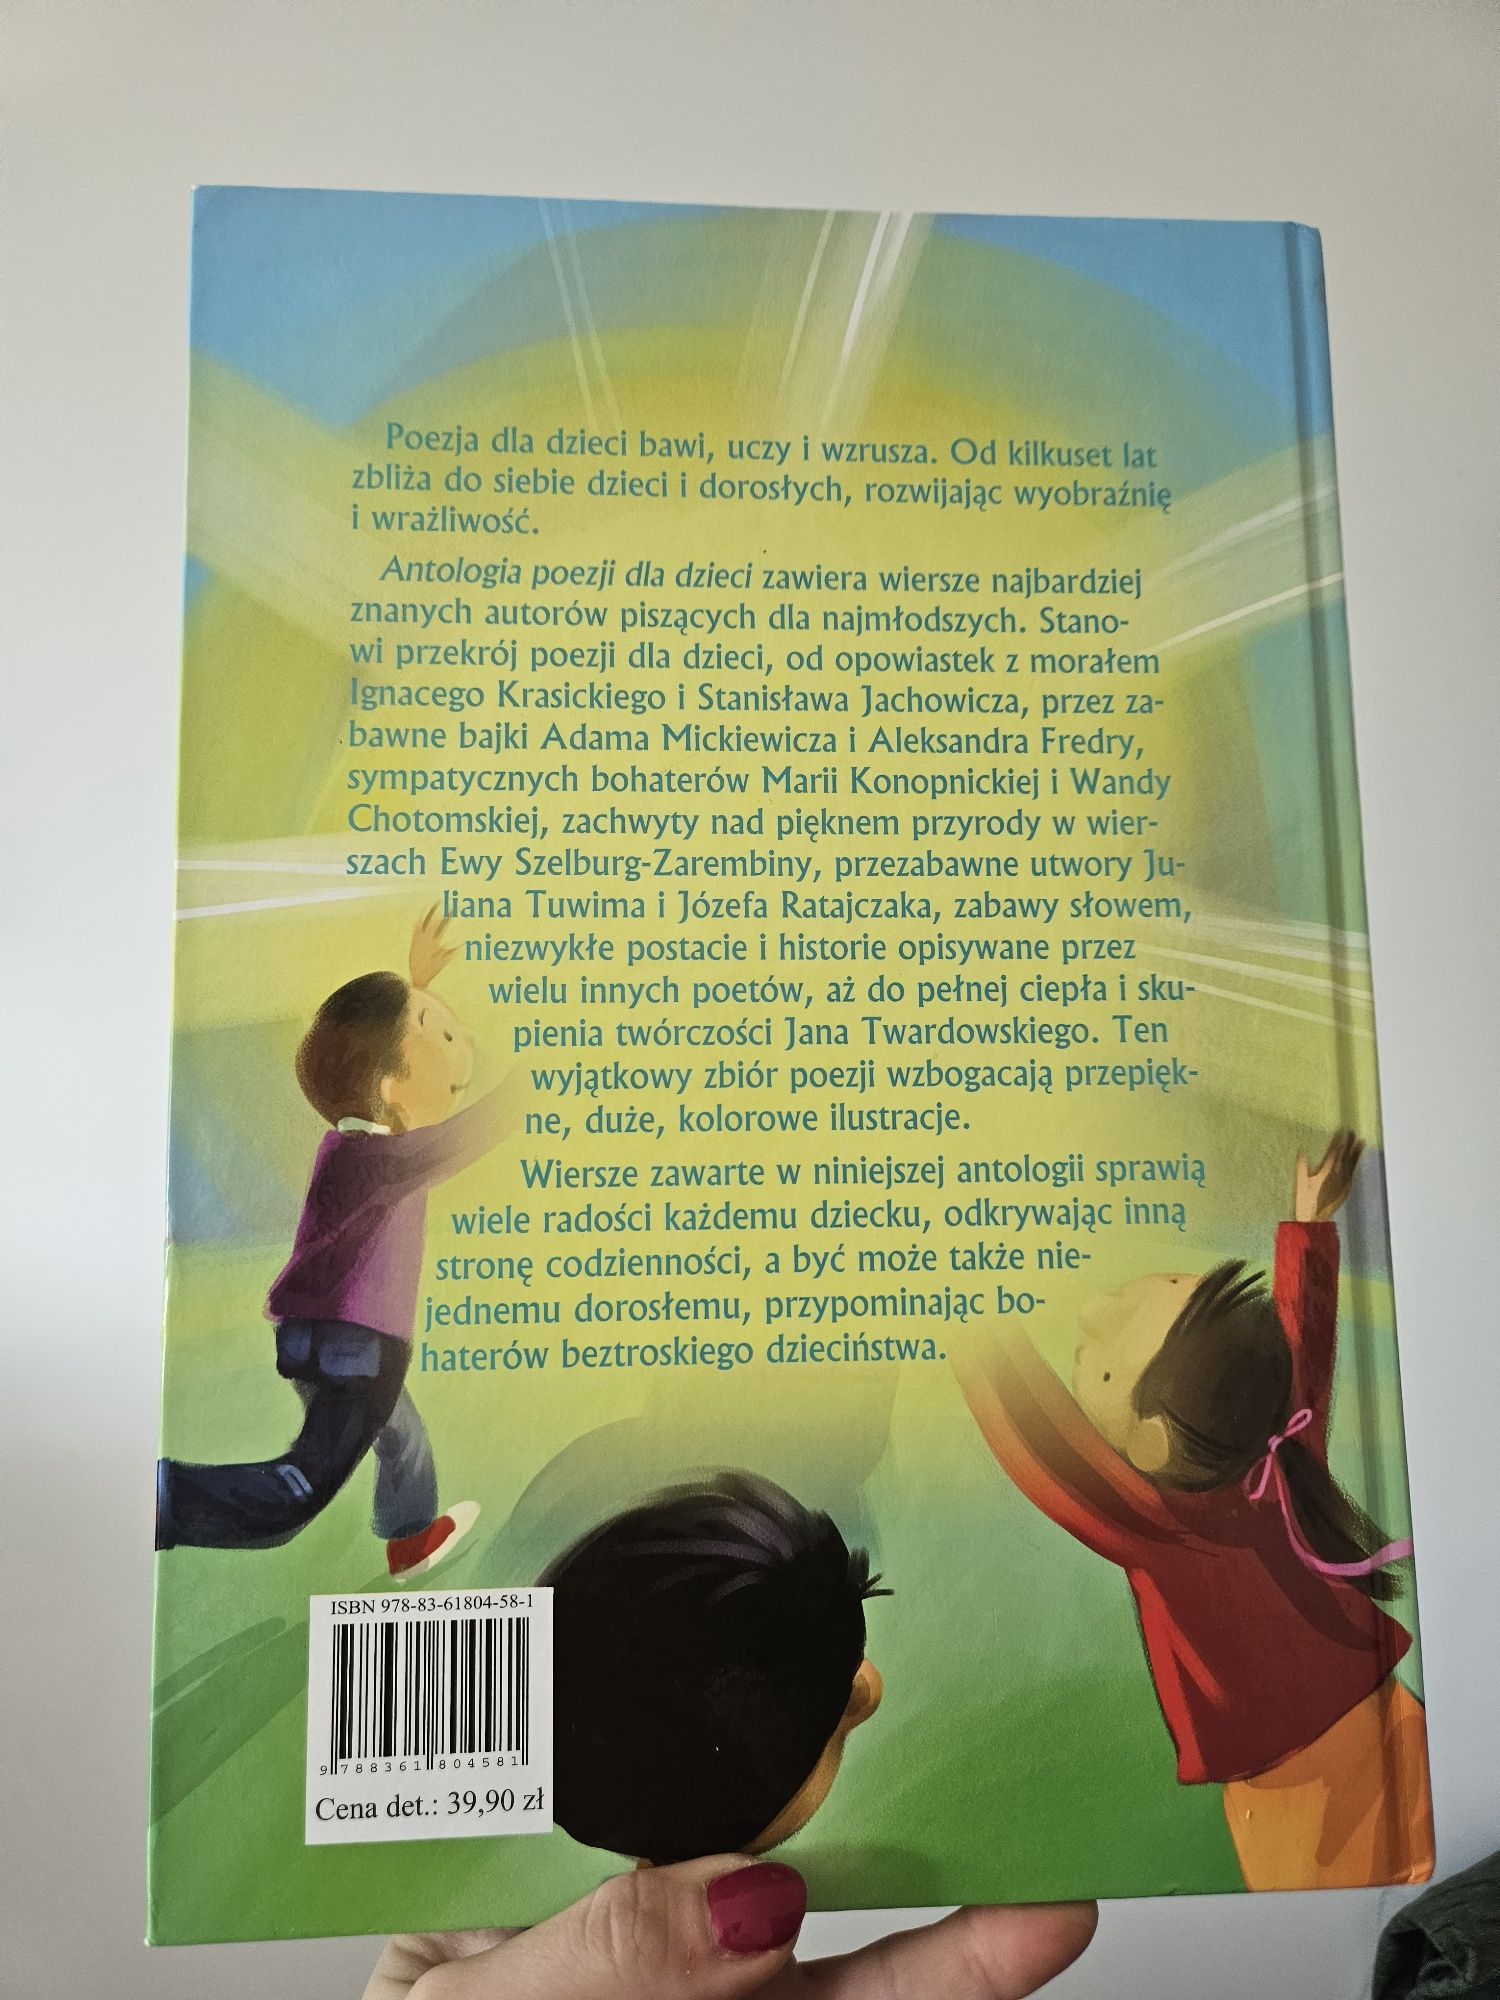 Książka dla dzieci  ,,Antologia poezji dla dzieci "